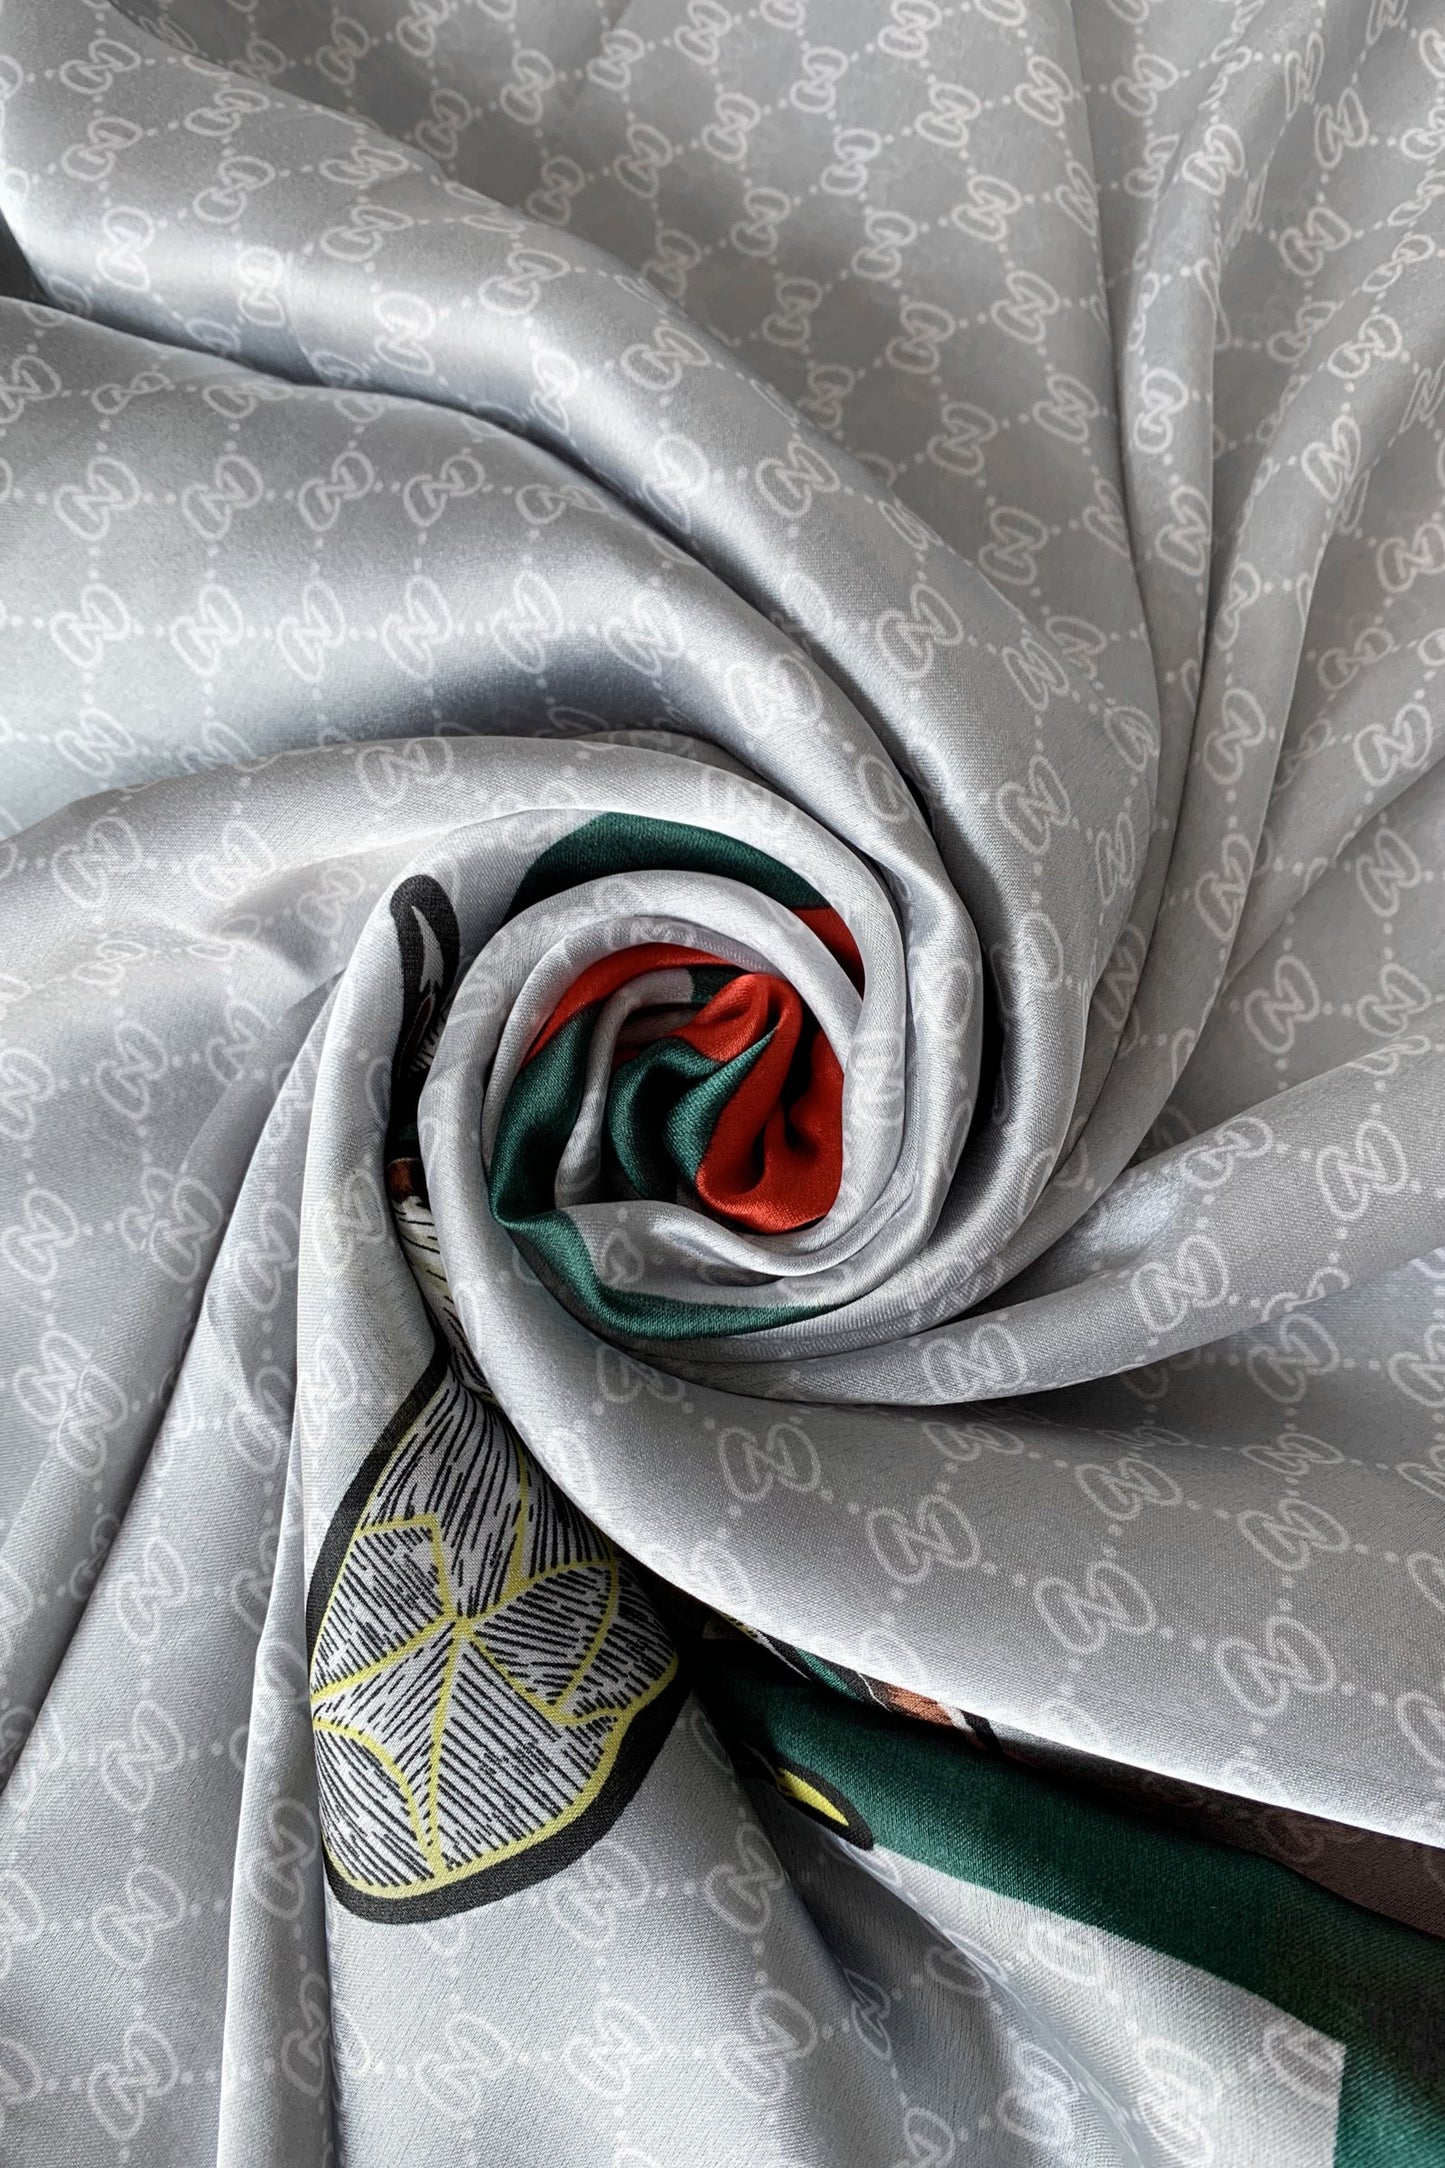 Hedvábná šála-šátek, 90 cm x 180 cm, Včelí vzor, Stříbrně šedá